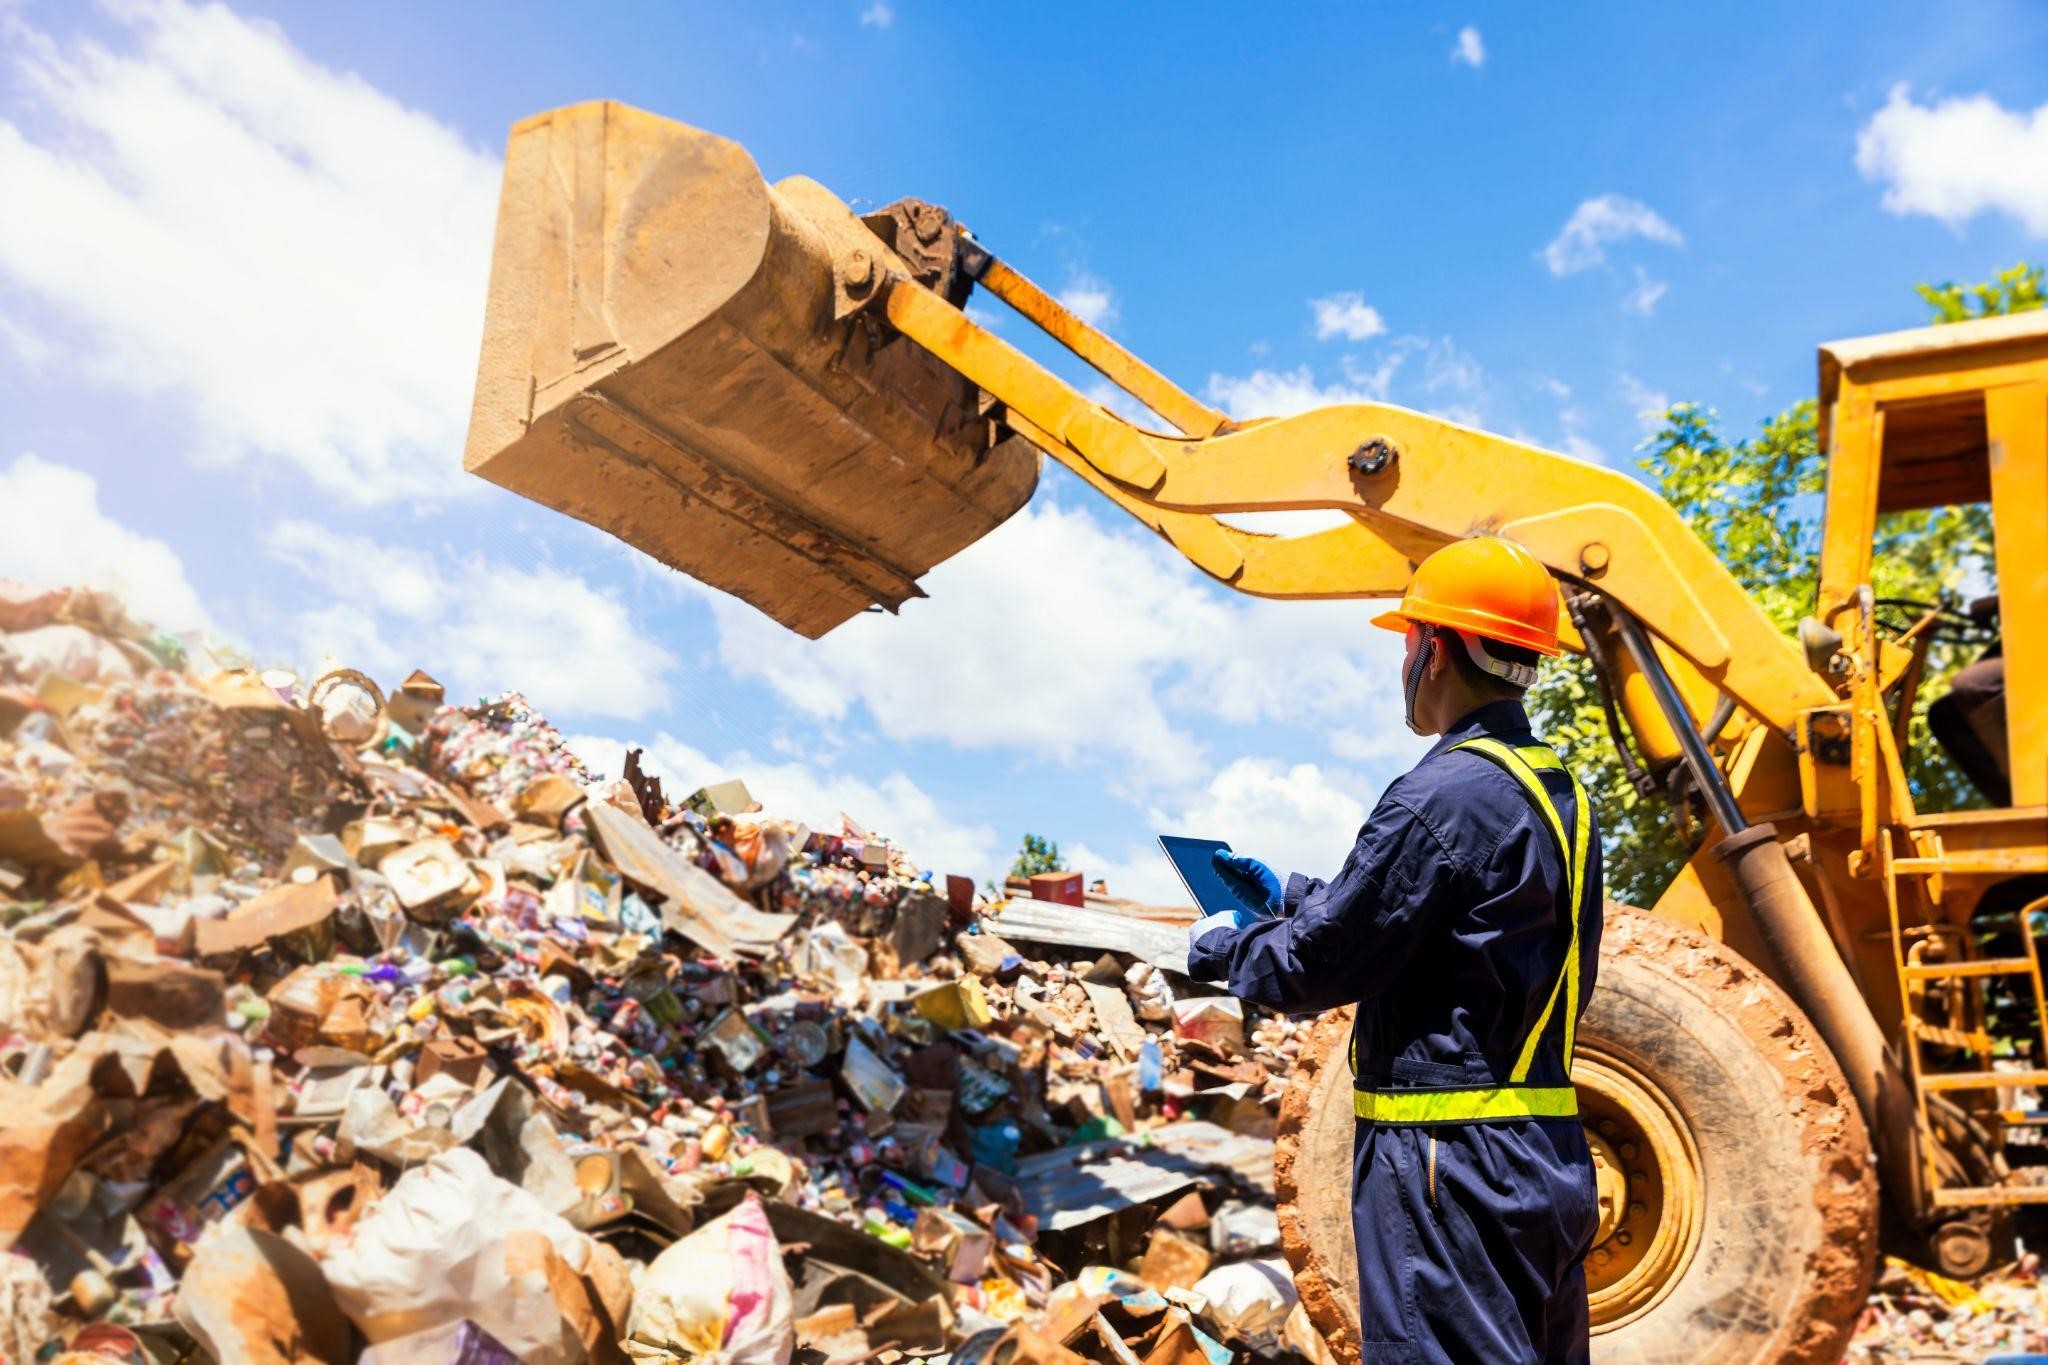 特別管理産業廃棄物の種類と扱う際の注意点について解説